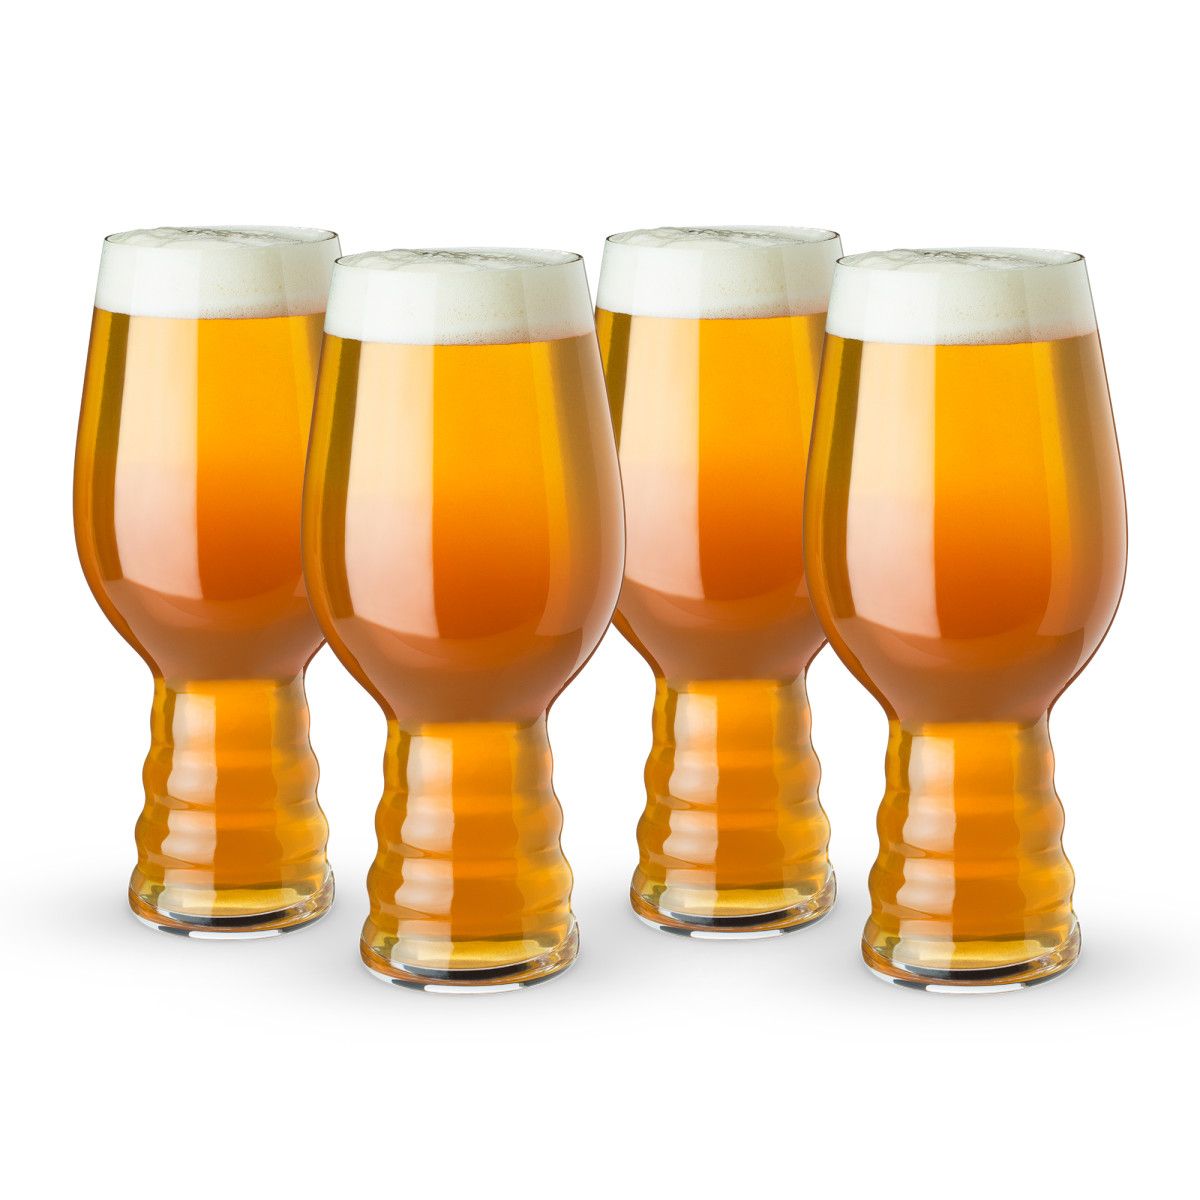 SPIEGELAU Craft Beer Glasses Barrel Aged Beer